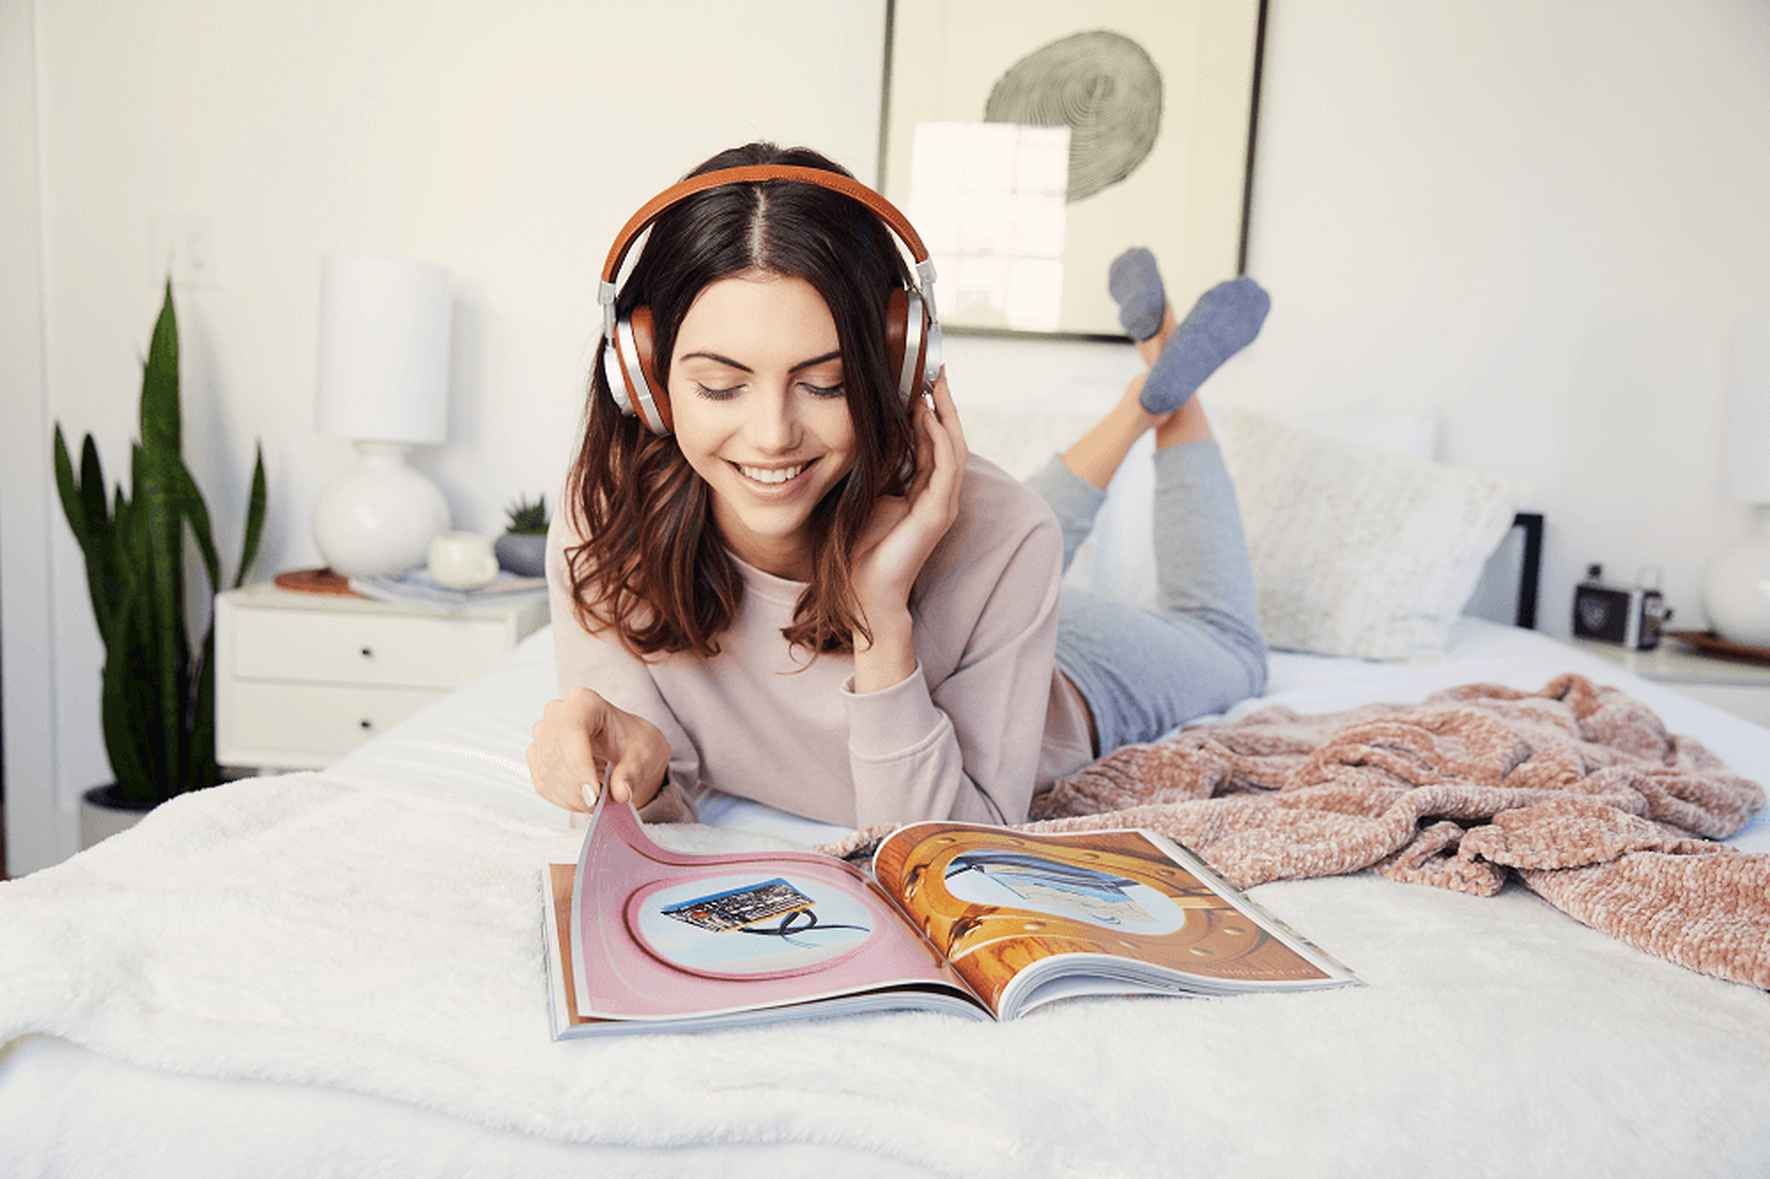 Une femme avec des appareils auditifs est sur son lit en train de lire un magazine avec le logo Peds